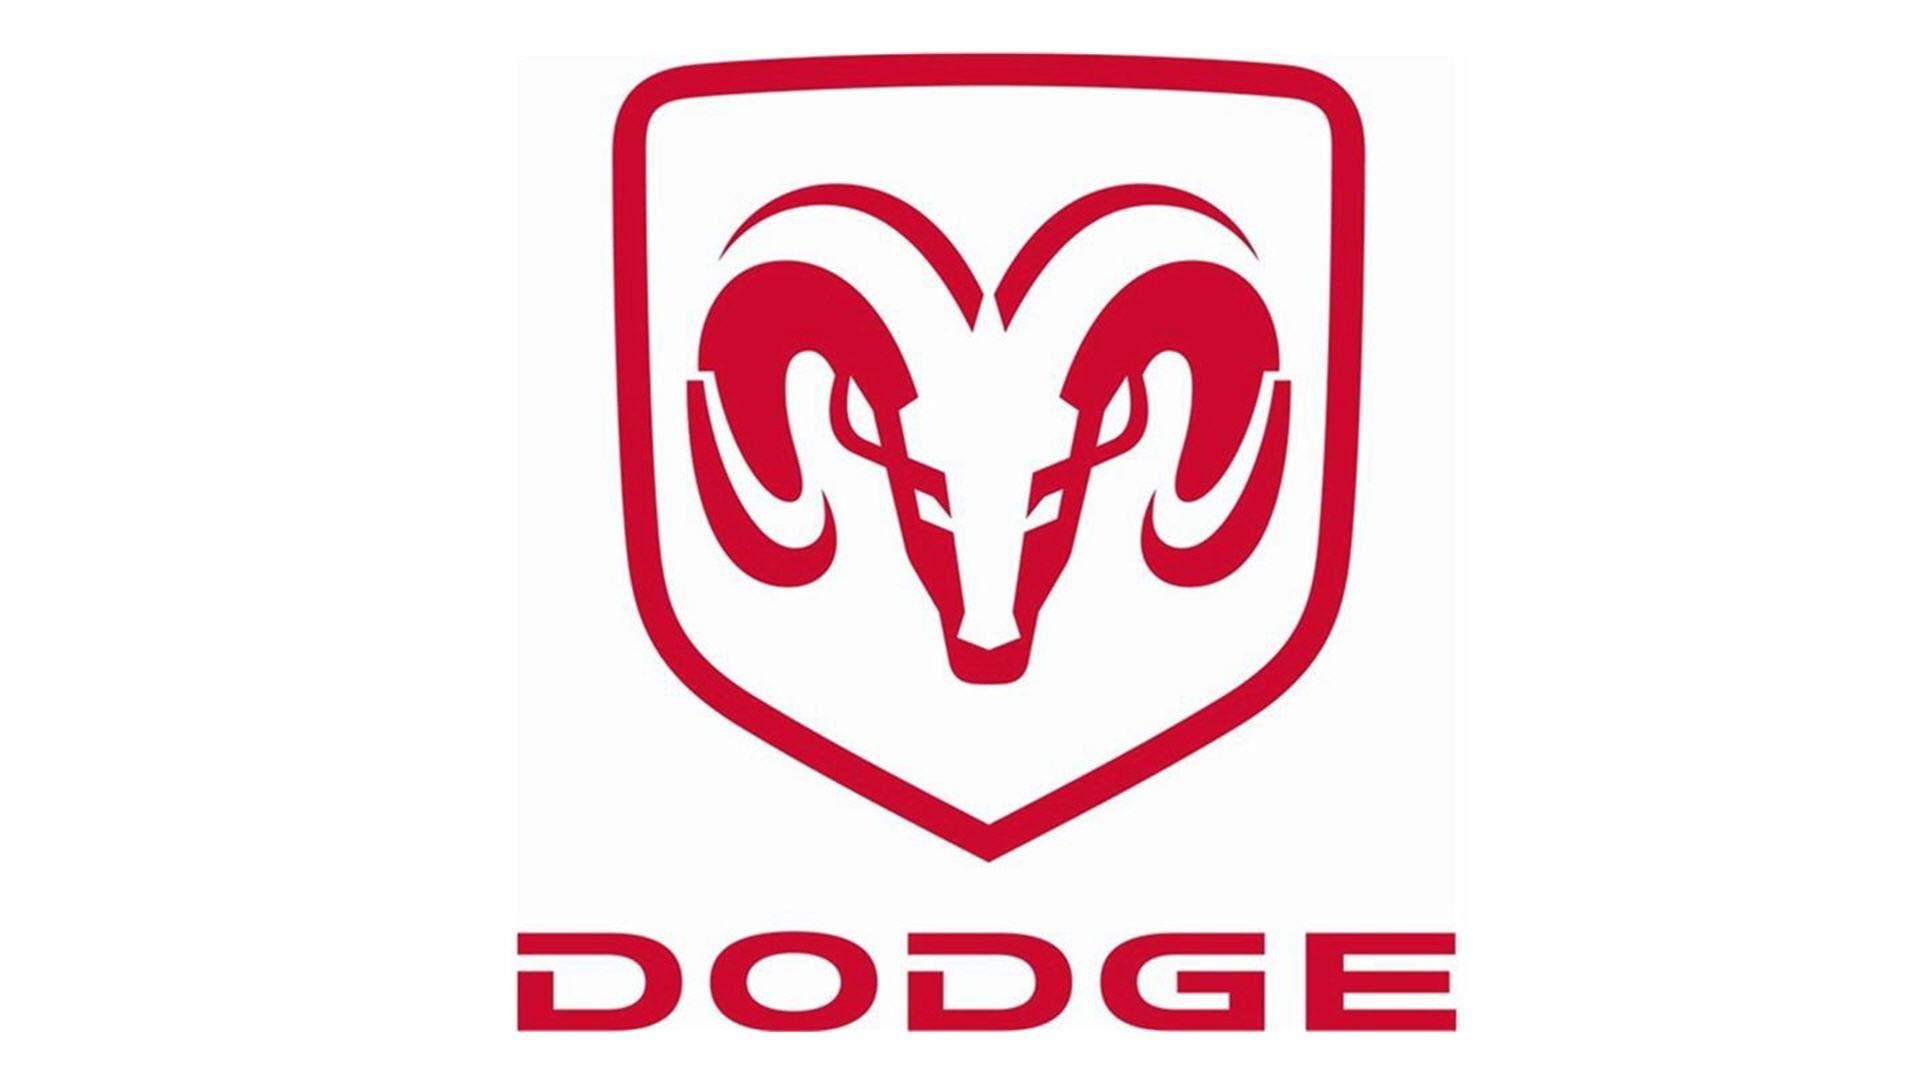 1920x1080 Dodge Ram Logo Wallpaper HD - WallpaperSafari